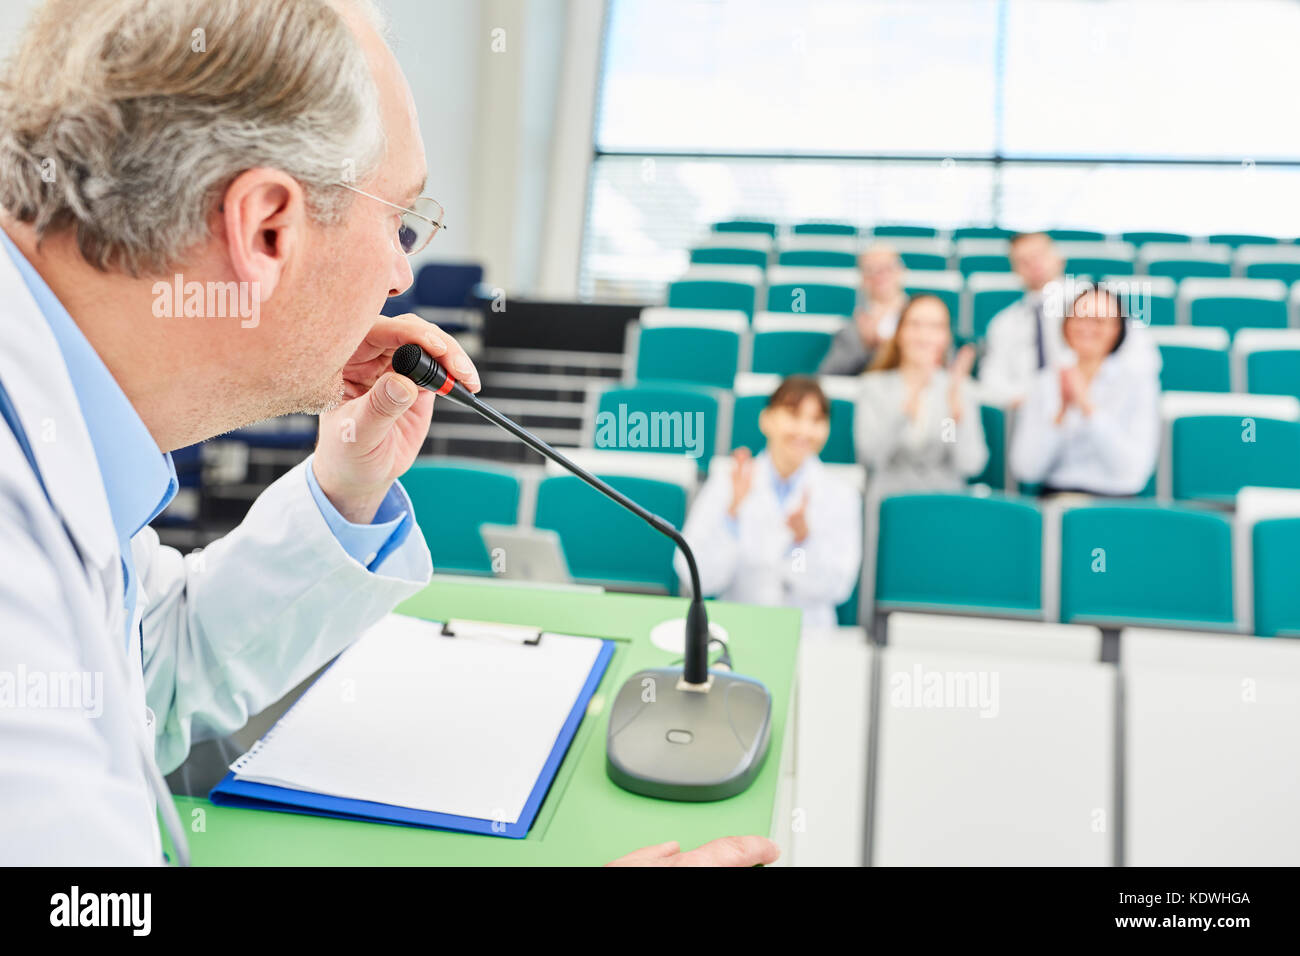 Medizin Lautsprecher in der medizinischen Vorlesung mit Studenten erhält Beifall Stockfoto